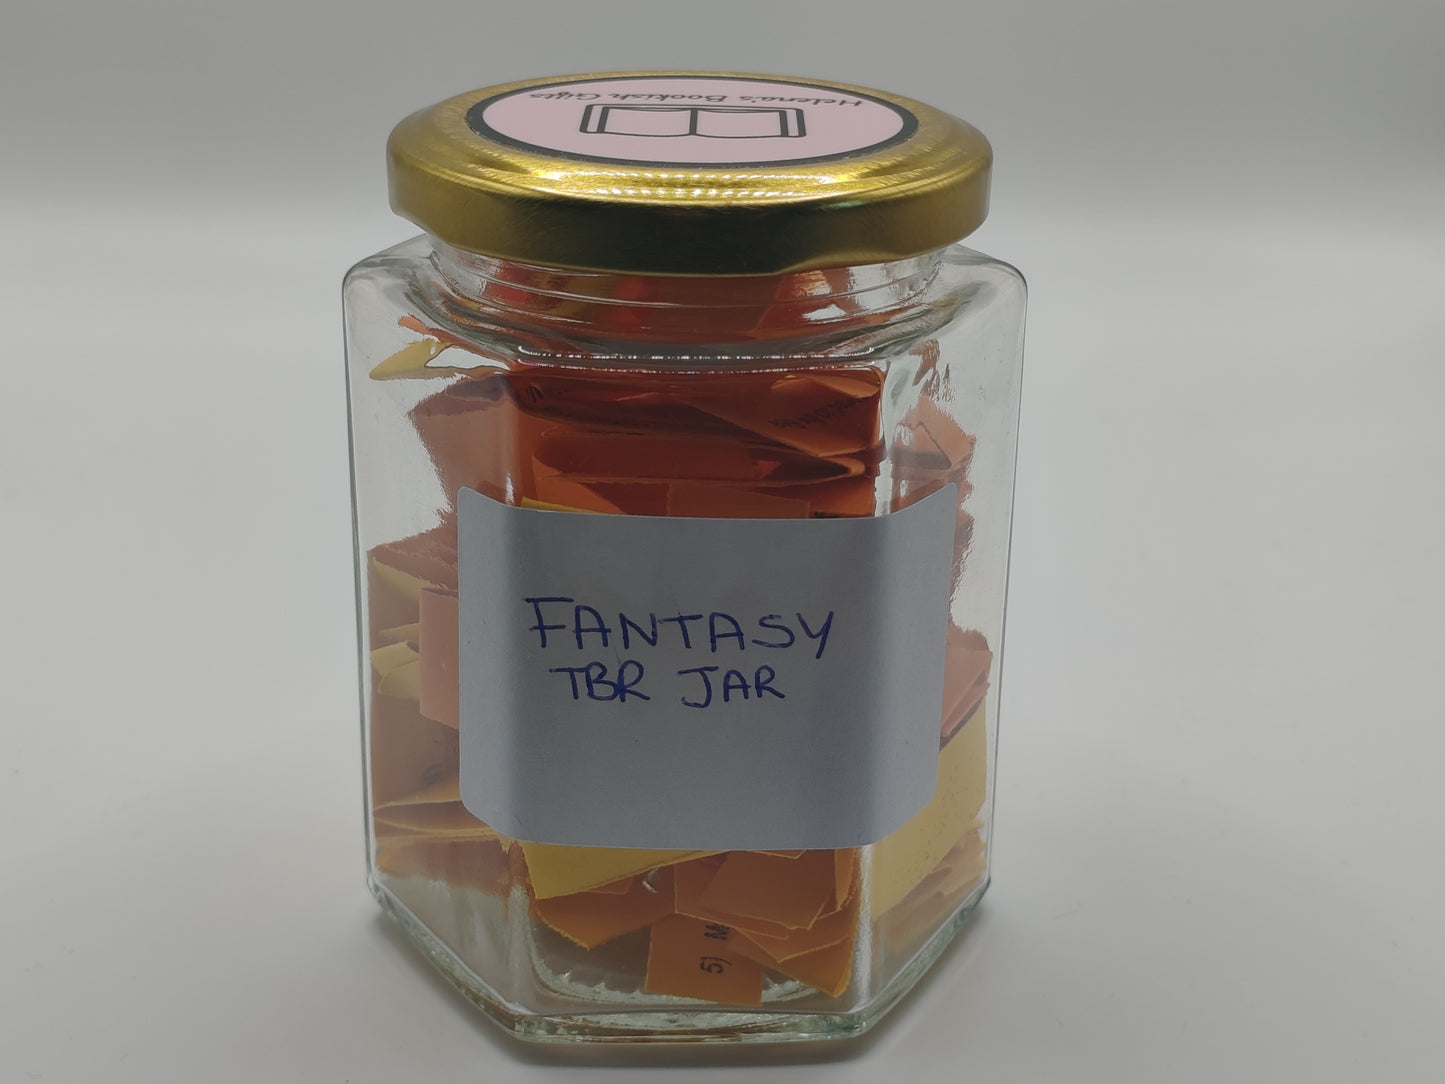 Fantasy TBR Jar